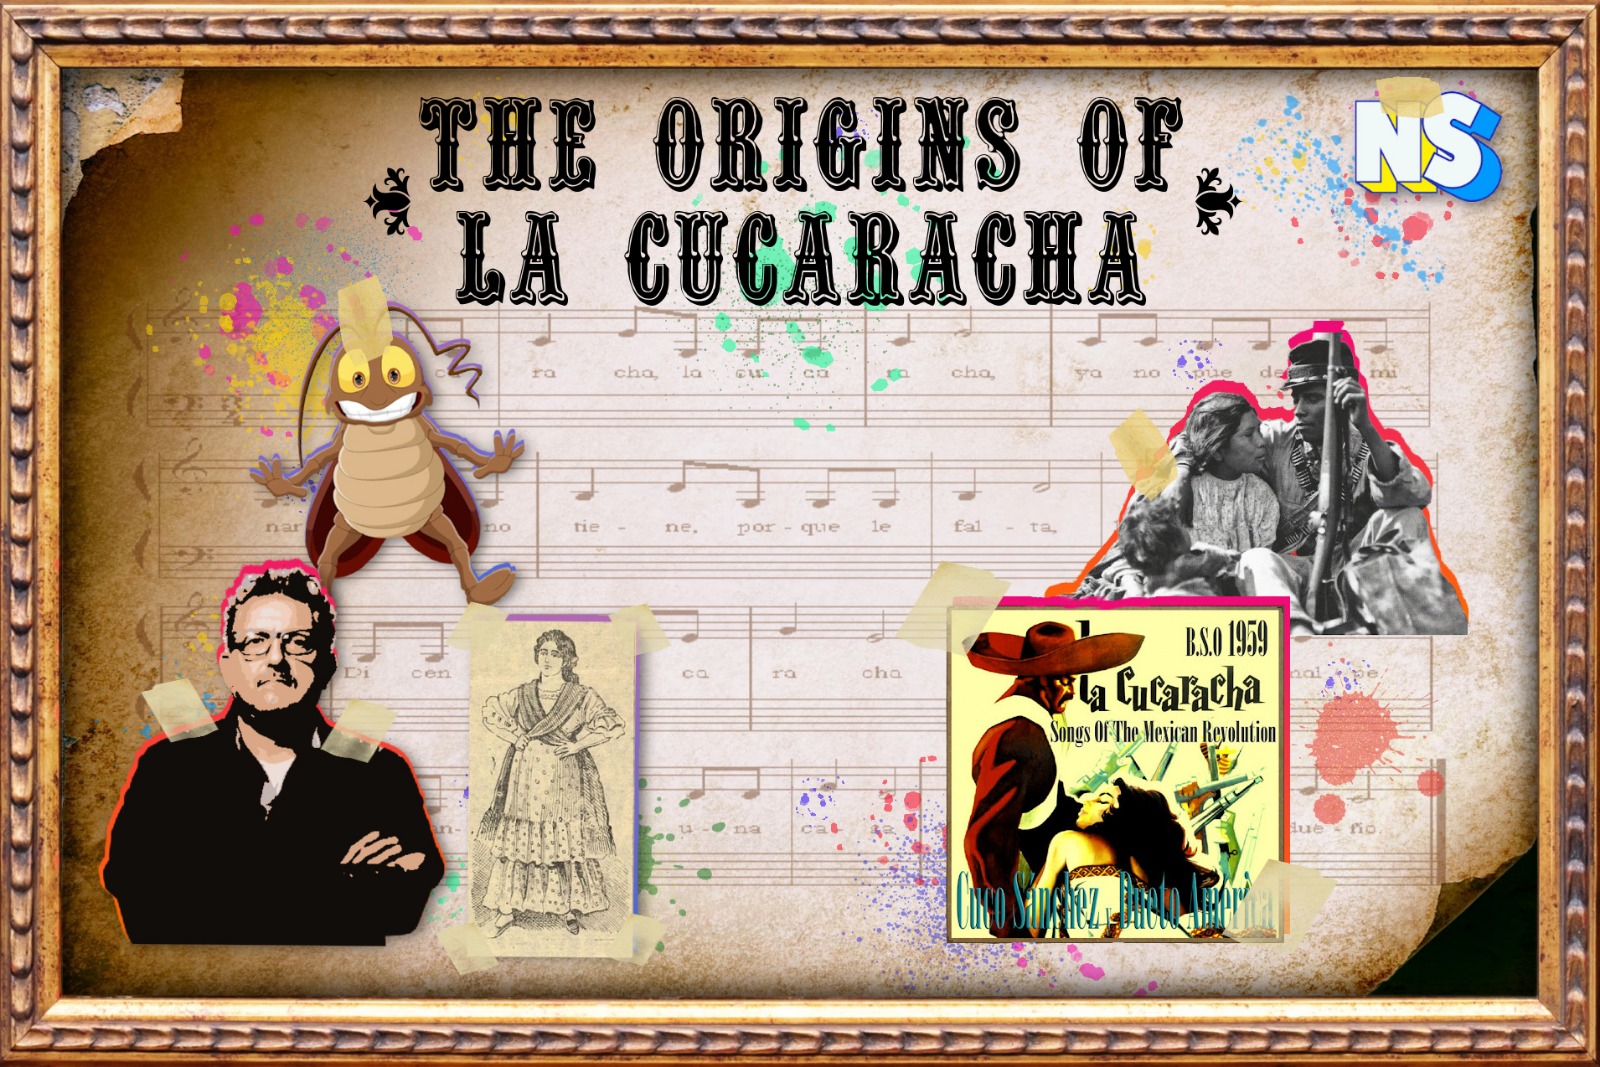 The Legend of La'cucaracha